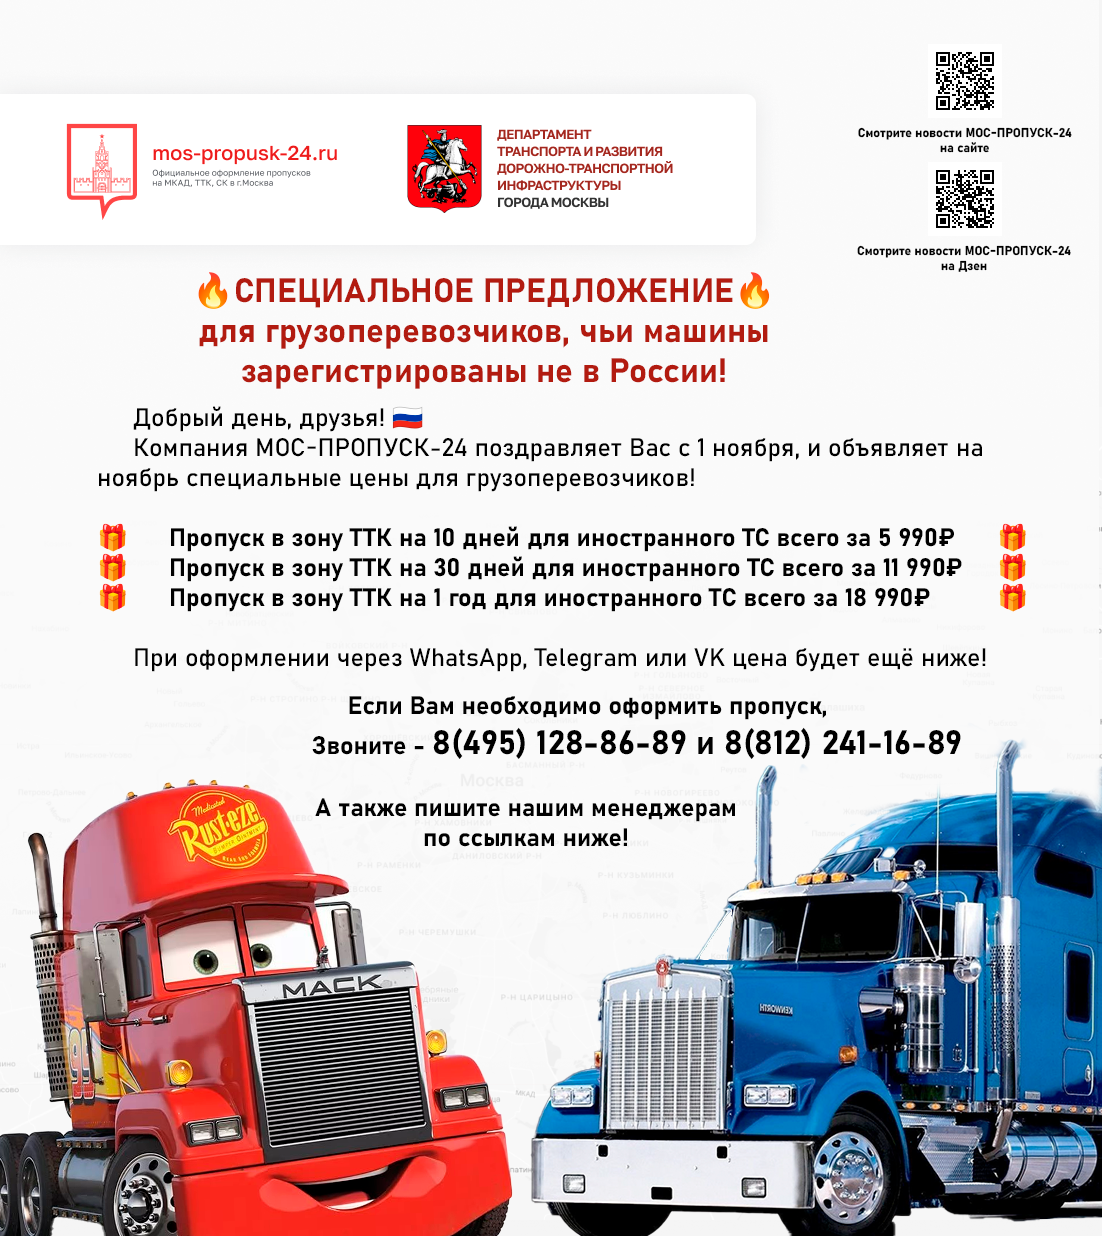 🔥СПЕЦИАЛЬНОЕ ПРЕДЛОЖЕНИЕ🔥  - для грузоперевозчиков, чьи машины зарегистрированы не в России!